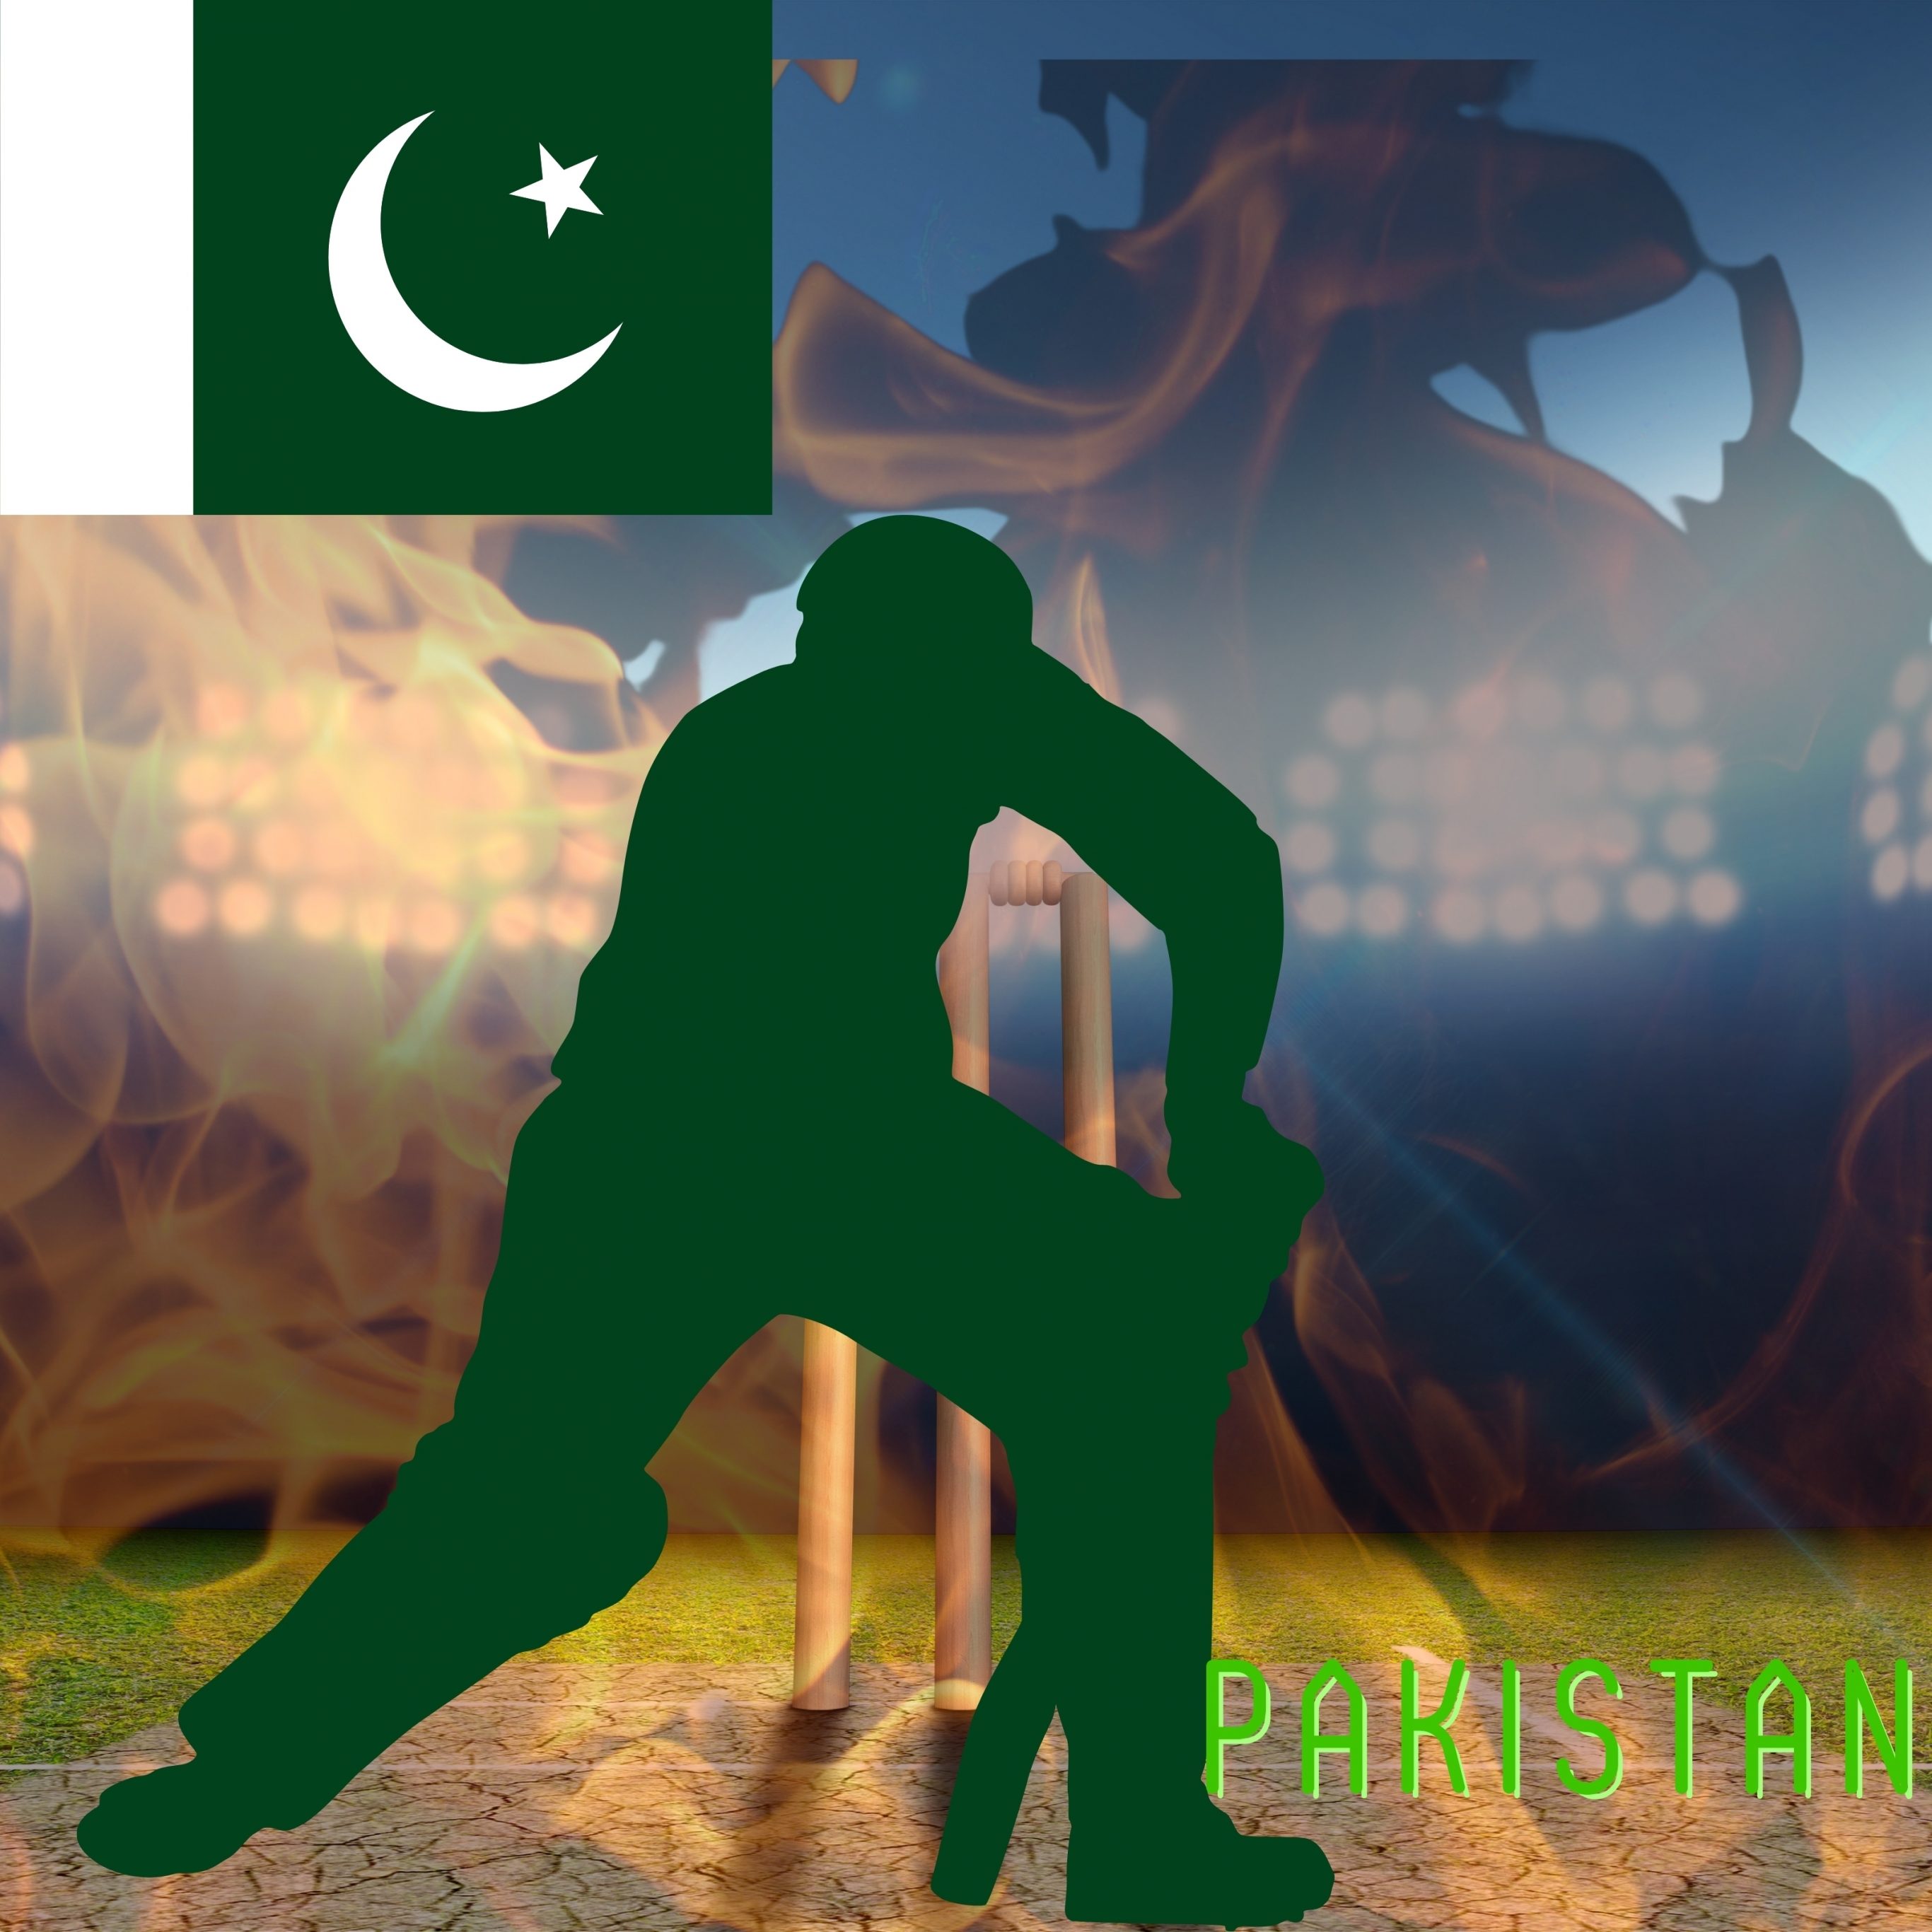 2732x2732 wallpapers 4k iPad Pro Pakistan Cricket Stadium iPad Wallpaper 2732x2732 pixels resolution